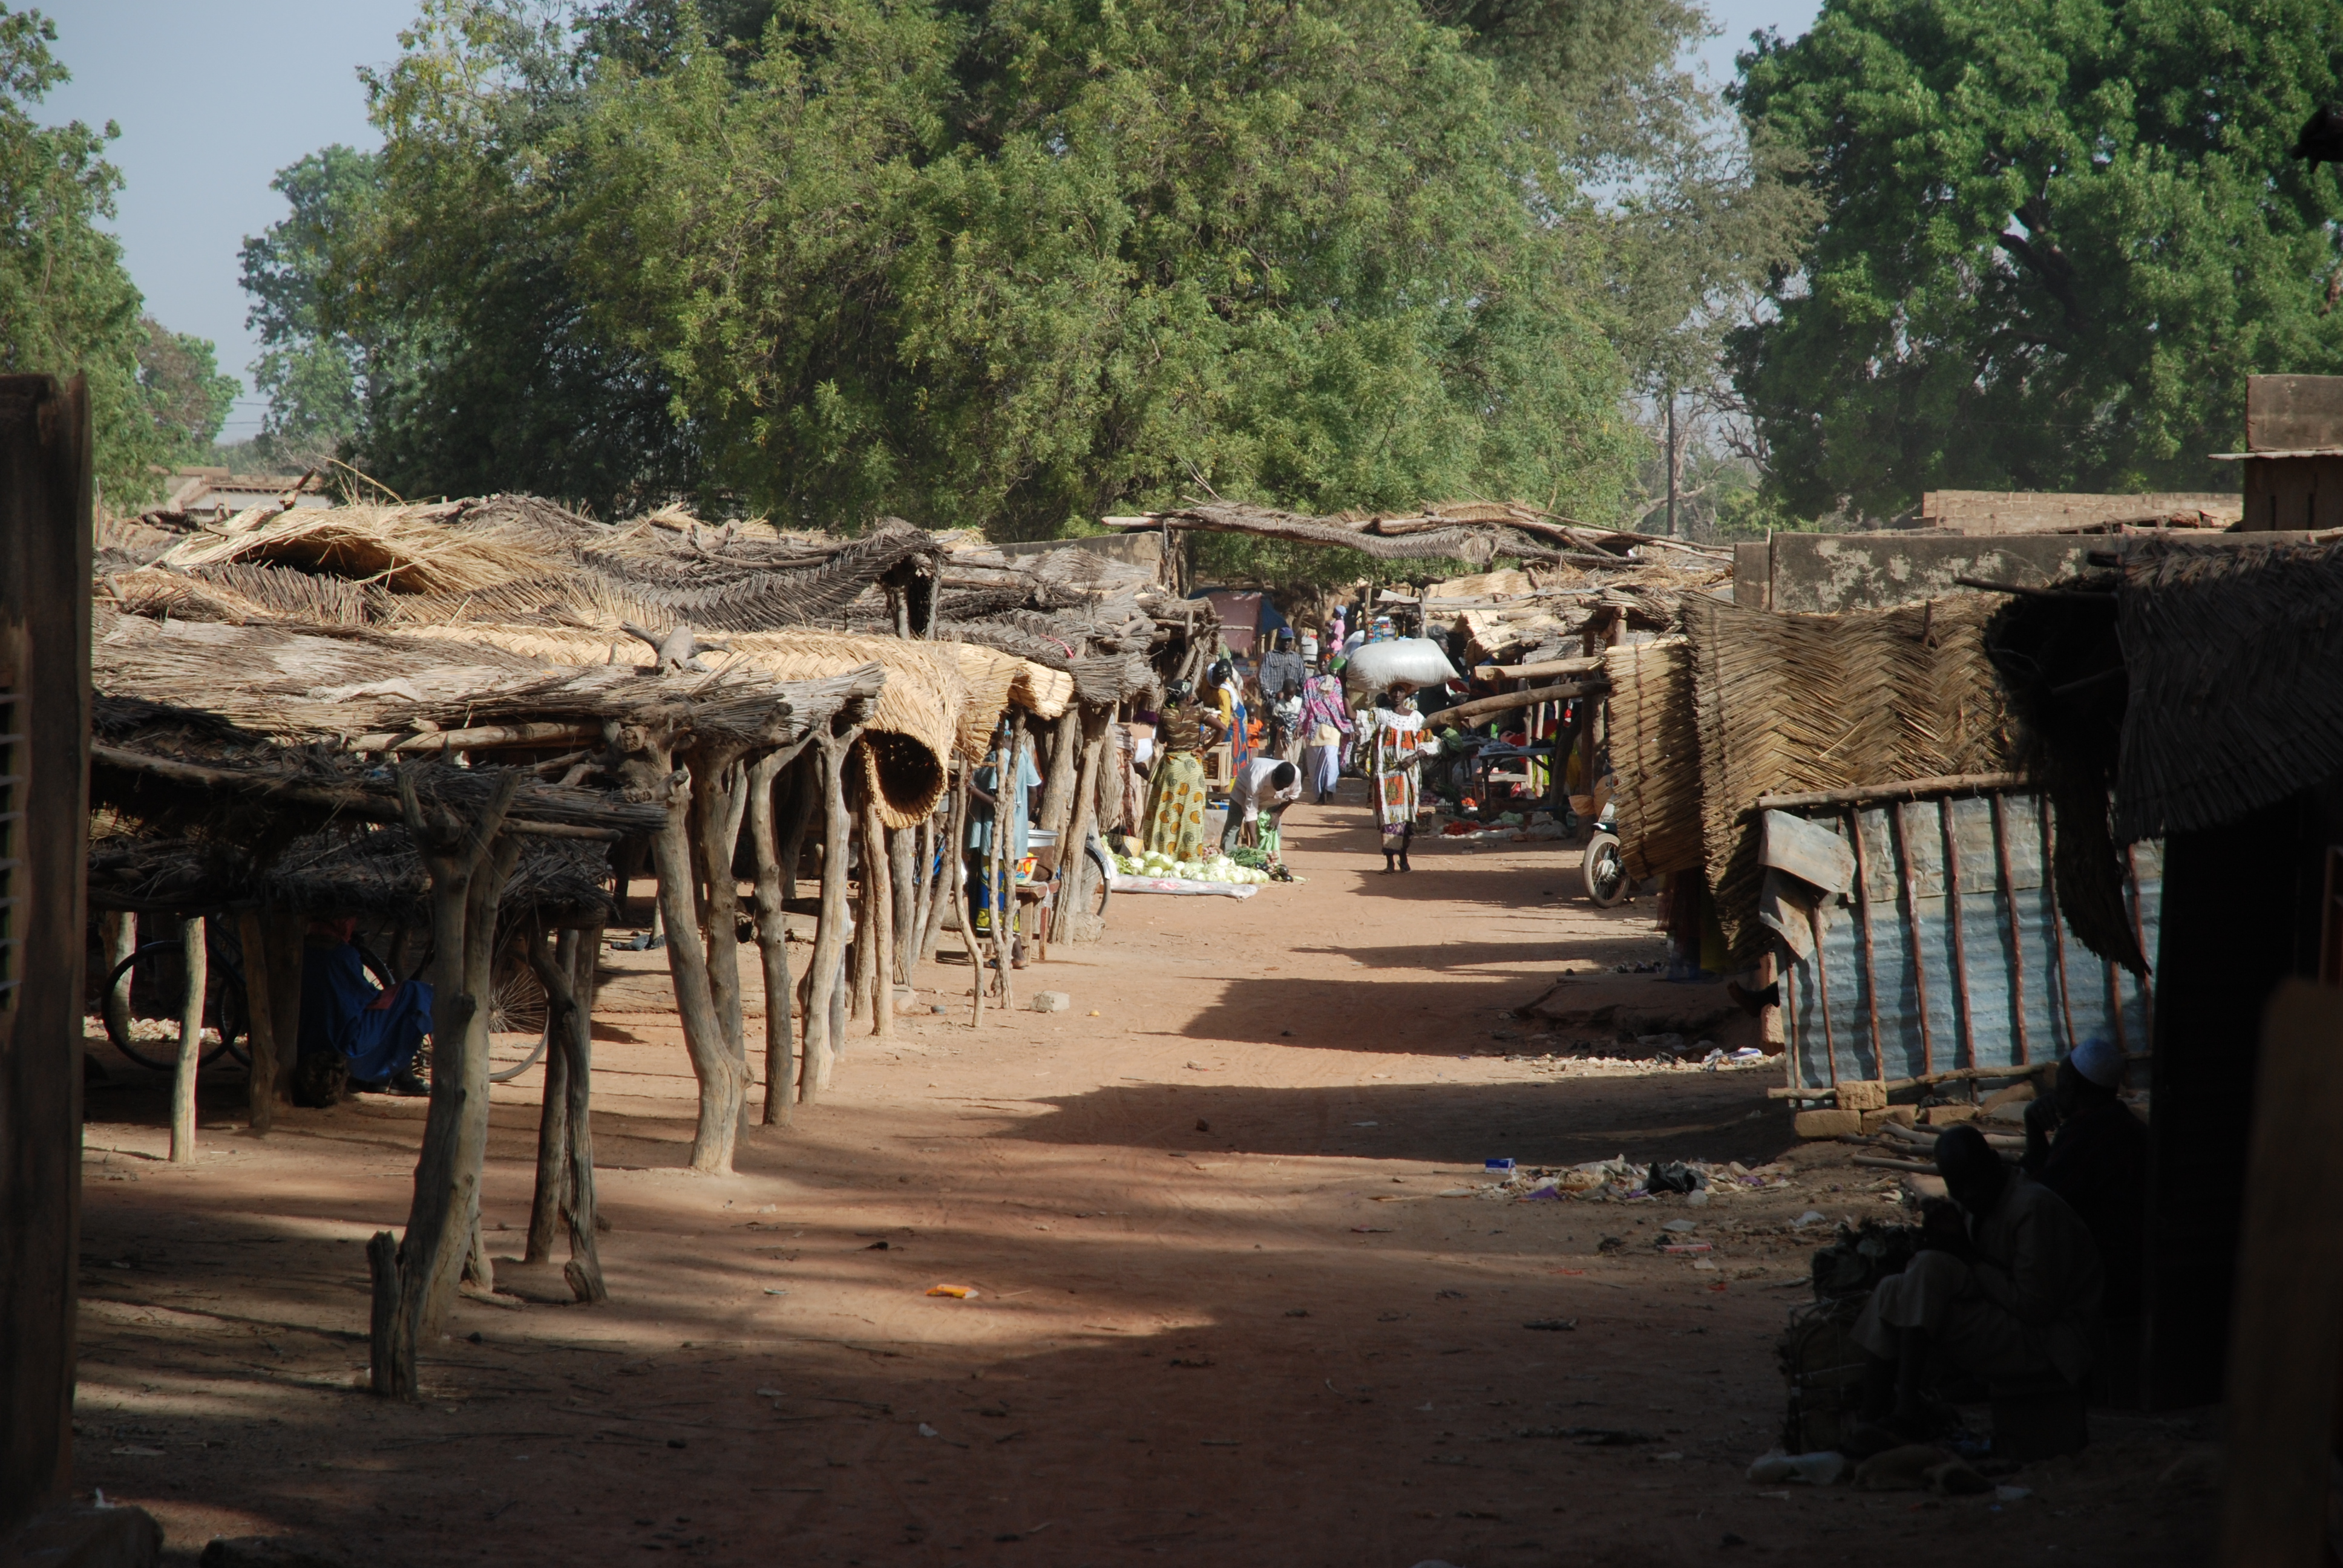 Φωτογραφικό υλικό από την Αποστολή στην Burkina Faso, στην πόλη Sabou